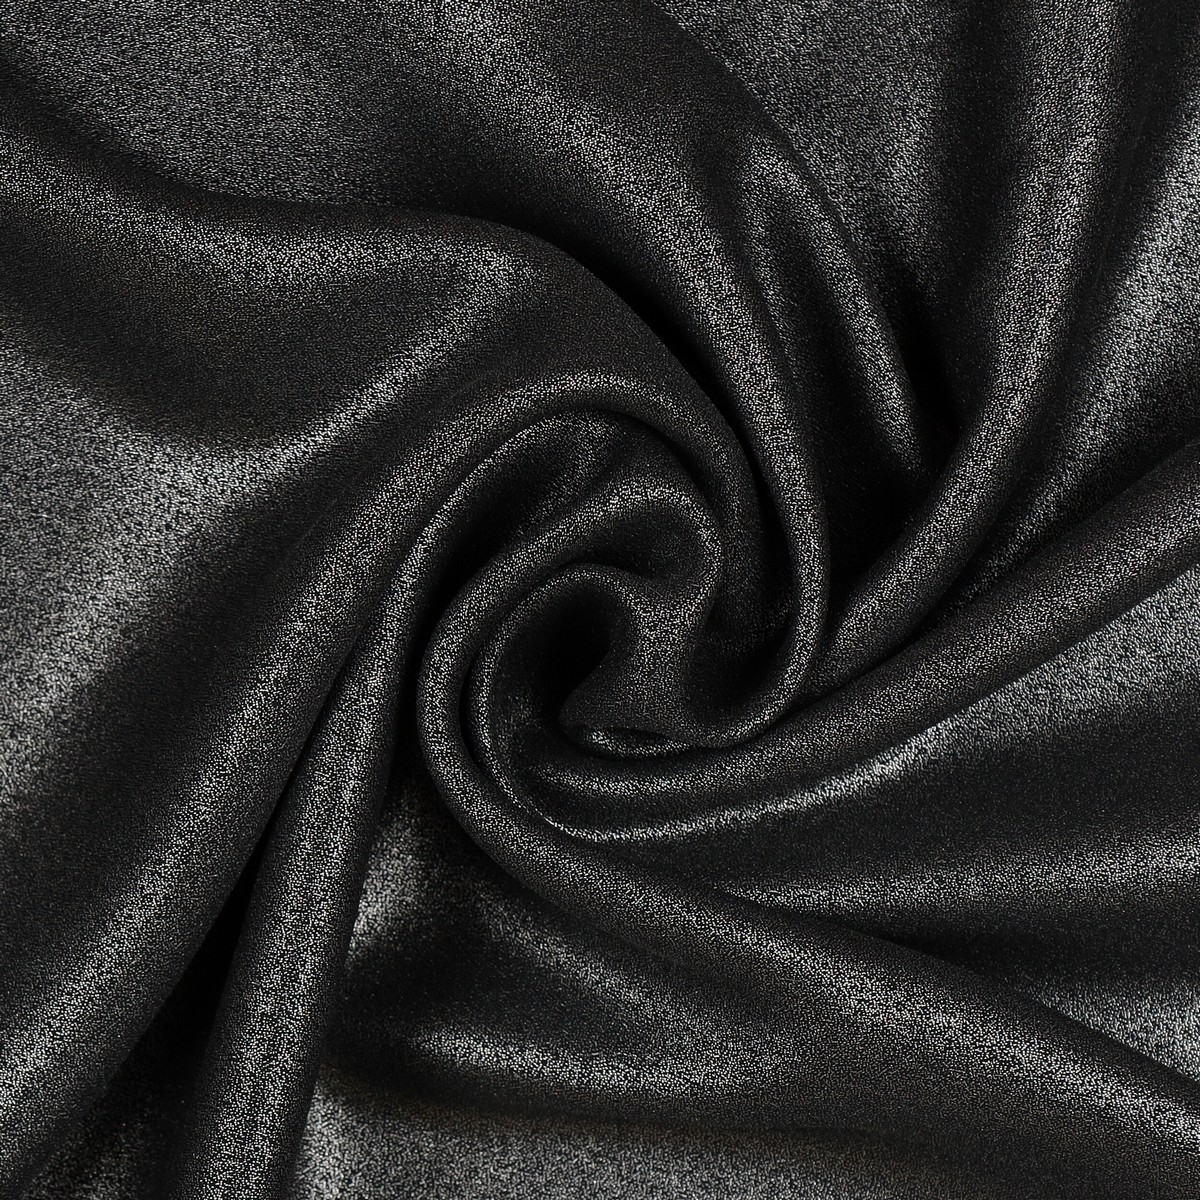 Tessuto Chiffon Glitter - Colore Nero - Glitter Argento - Mezzo Metro 